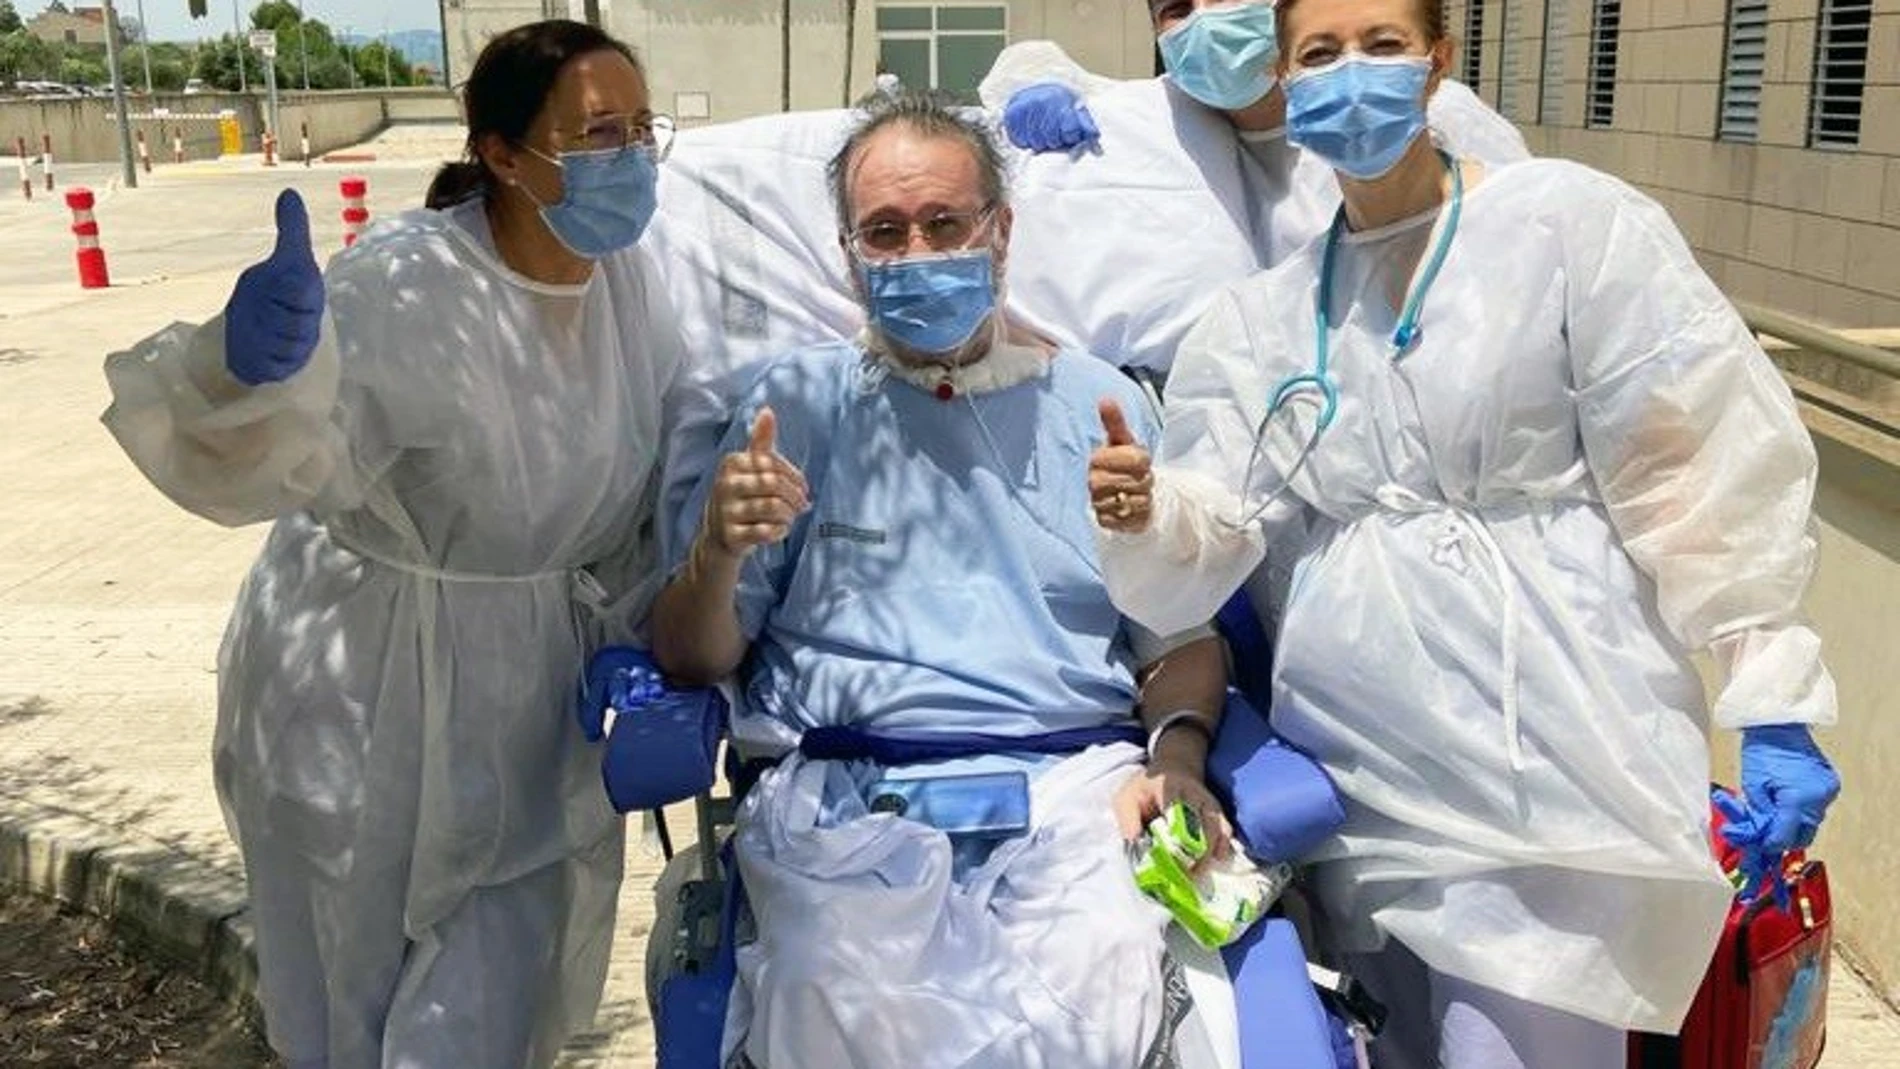 Fernando, paciente del Hospital de La Ribera, acompañado por tres sanitarios, sale a "sentir el sol" después de permanecer casi 150 días ingresado en la UCI por Covid-19GVA21/06/2021